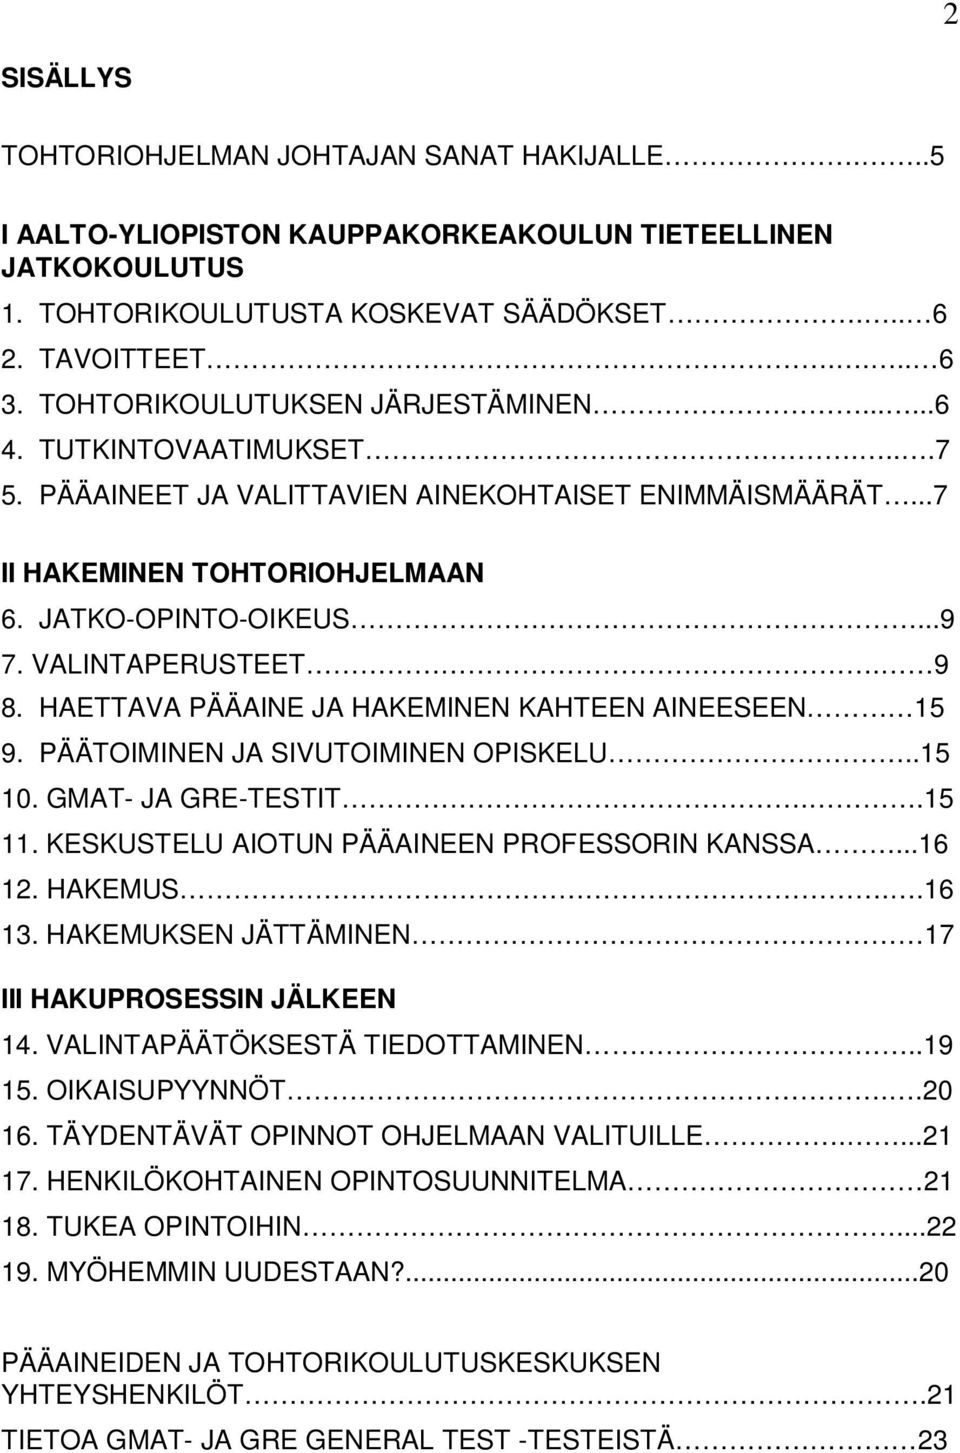 VALINTAPERUSTEET. 9 8. HAETTAVA PÄÄAINE JA HAKEMINEN KAHTEEN AINEESEEN 15 9. PÄÄTOIMINEN JA SIVUTOIMINEN OPISKELU..15 10. GMAT- JA GRE-TESTIT..15 11. KESKUSTELU AIOTUN PÄÄAINEEN PROFESSORIN KANSSA.